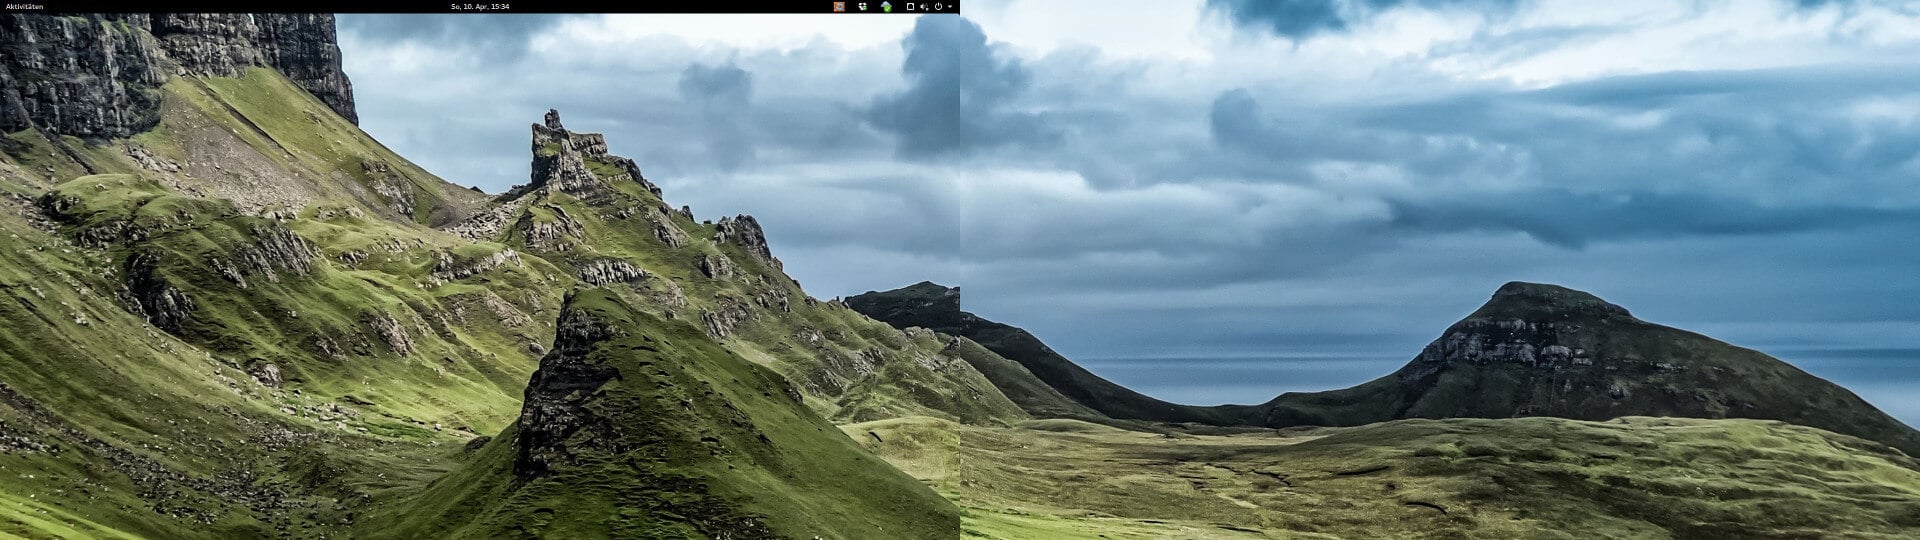 Hintergrund monitore desktop windows 7 2 30 Amazing